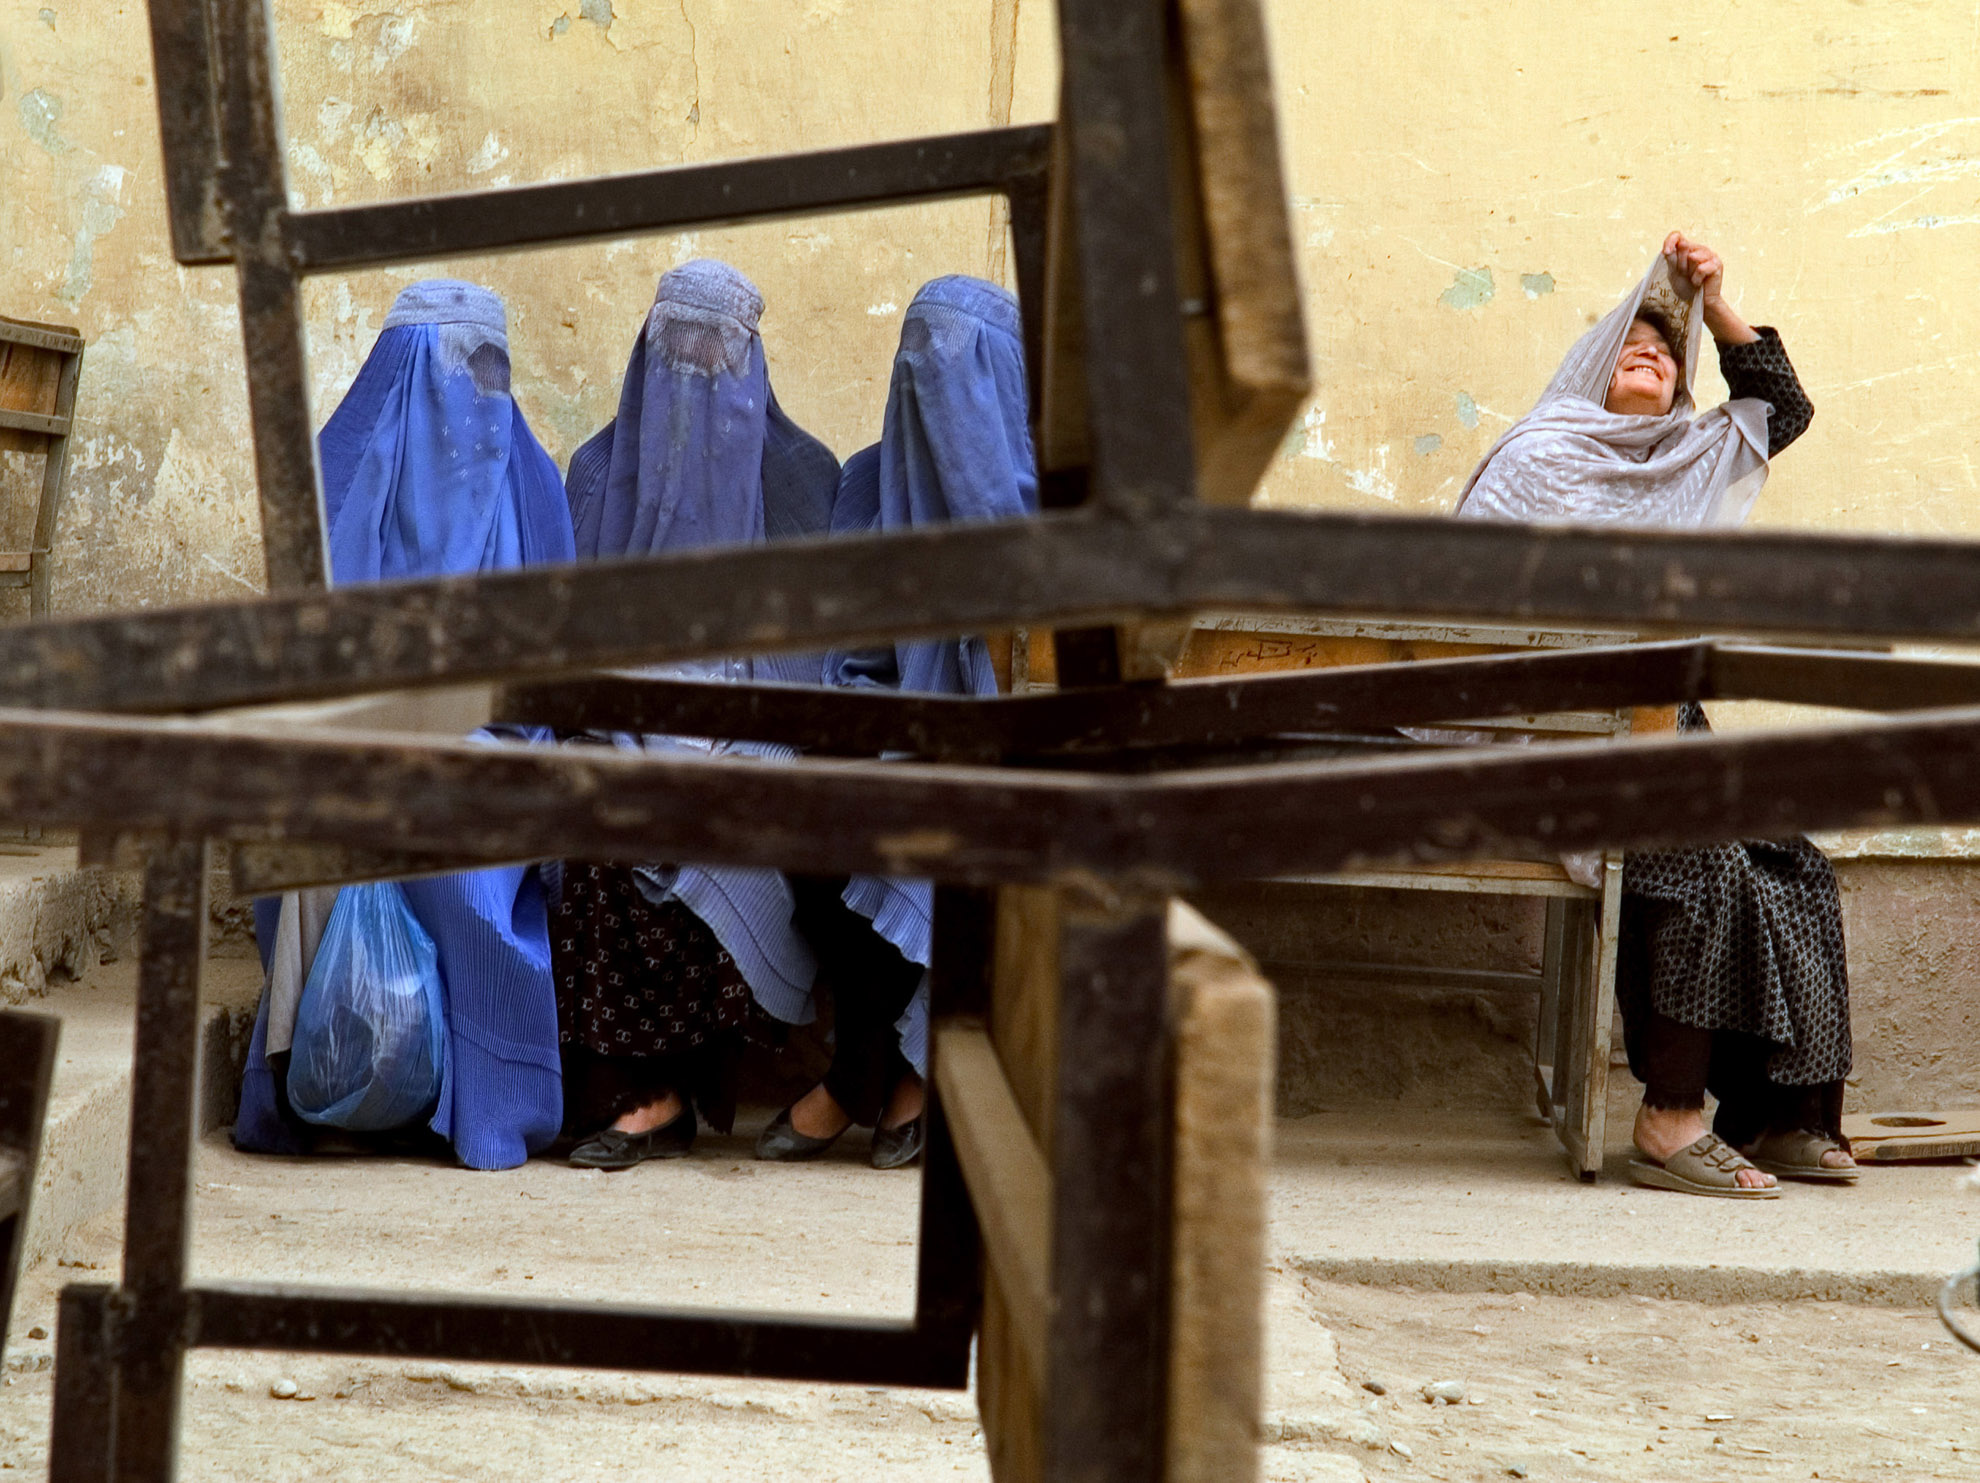 Esta imagen se tomó en el día de elecciones en Kabul, el 9 de octubre de 2004 -la primera vez que las mujeres tuvieron derecho a votar en las elecciones democráticas de Afganistán. A pesar de las cifras exageradas y de un proceso electoral fraudulento, las mujeres de Kabul -al menos algunas de ellas- votaron según su propio criterio. En las regiones rurales, lo más probable es que las mujeres (la mayoría, analfabetas) votasen a quien sus maridos, padres y hermanos les hubiesen dicho que votasen.